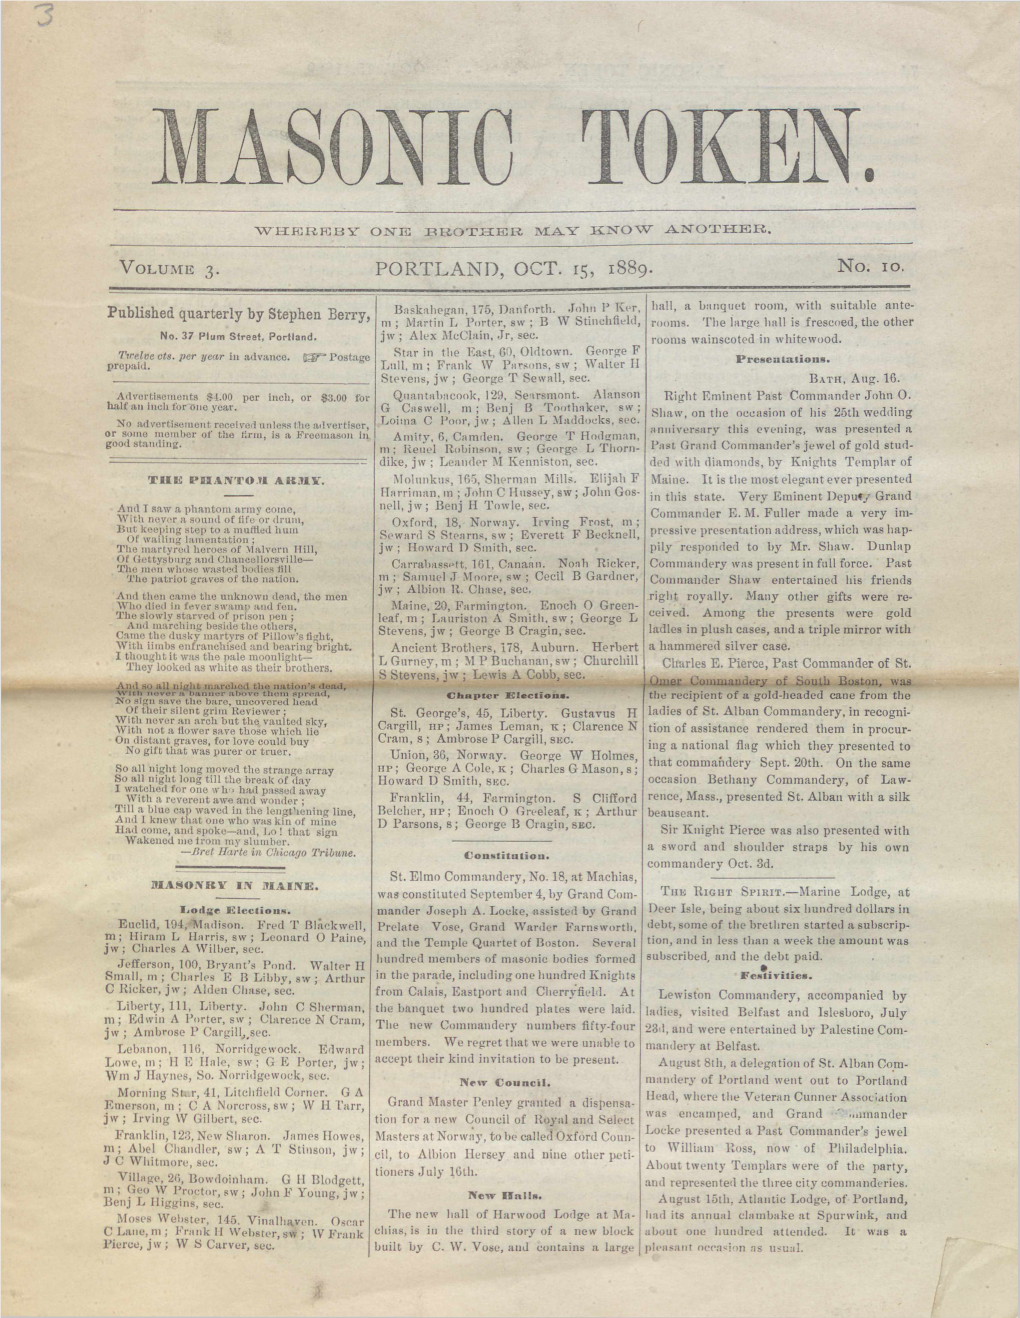 Masonic Token: October 15, 1889